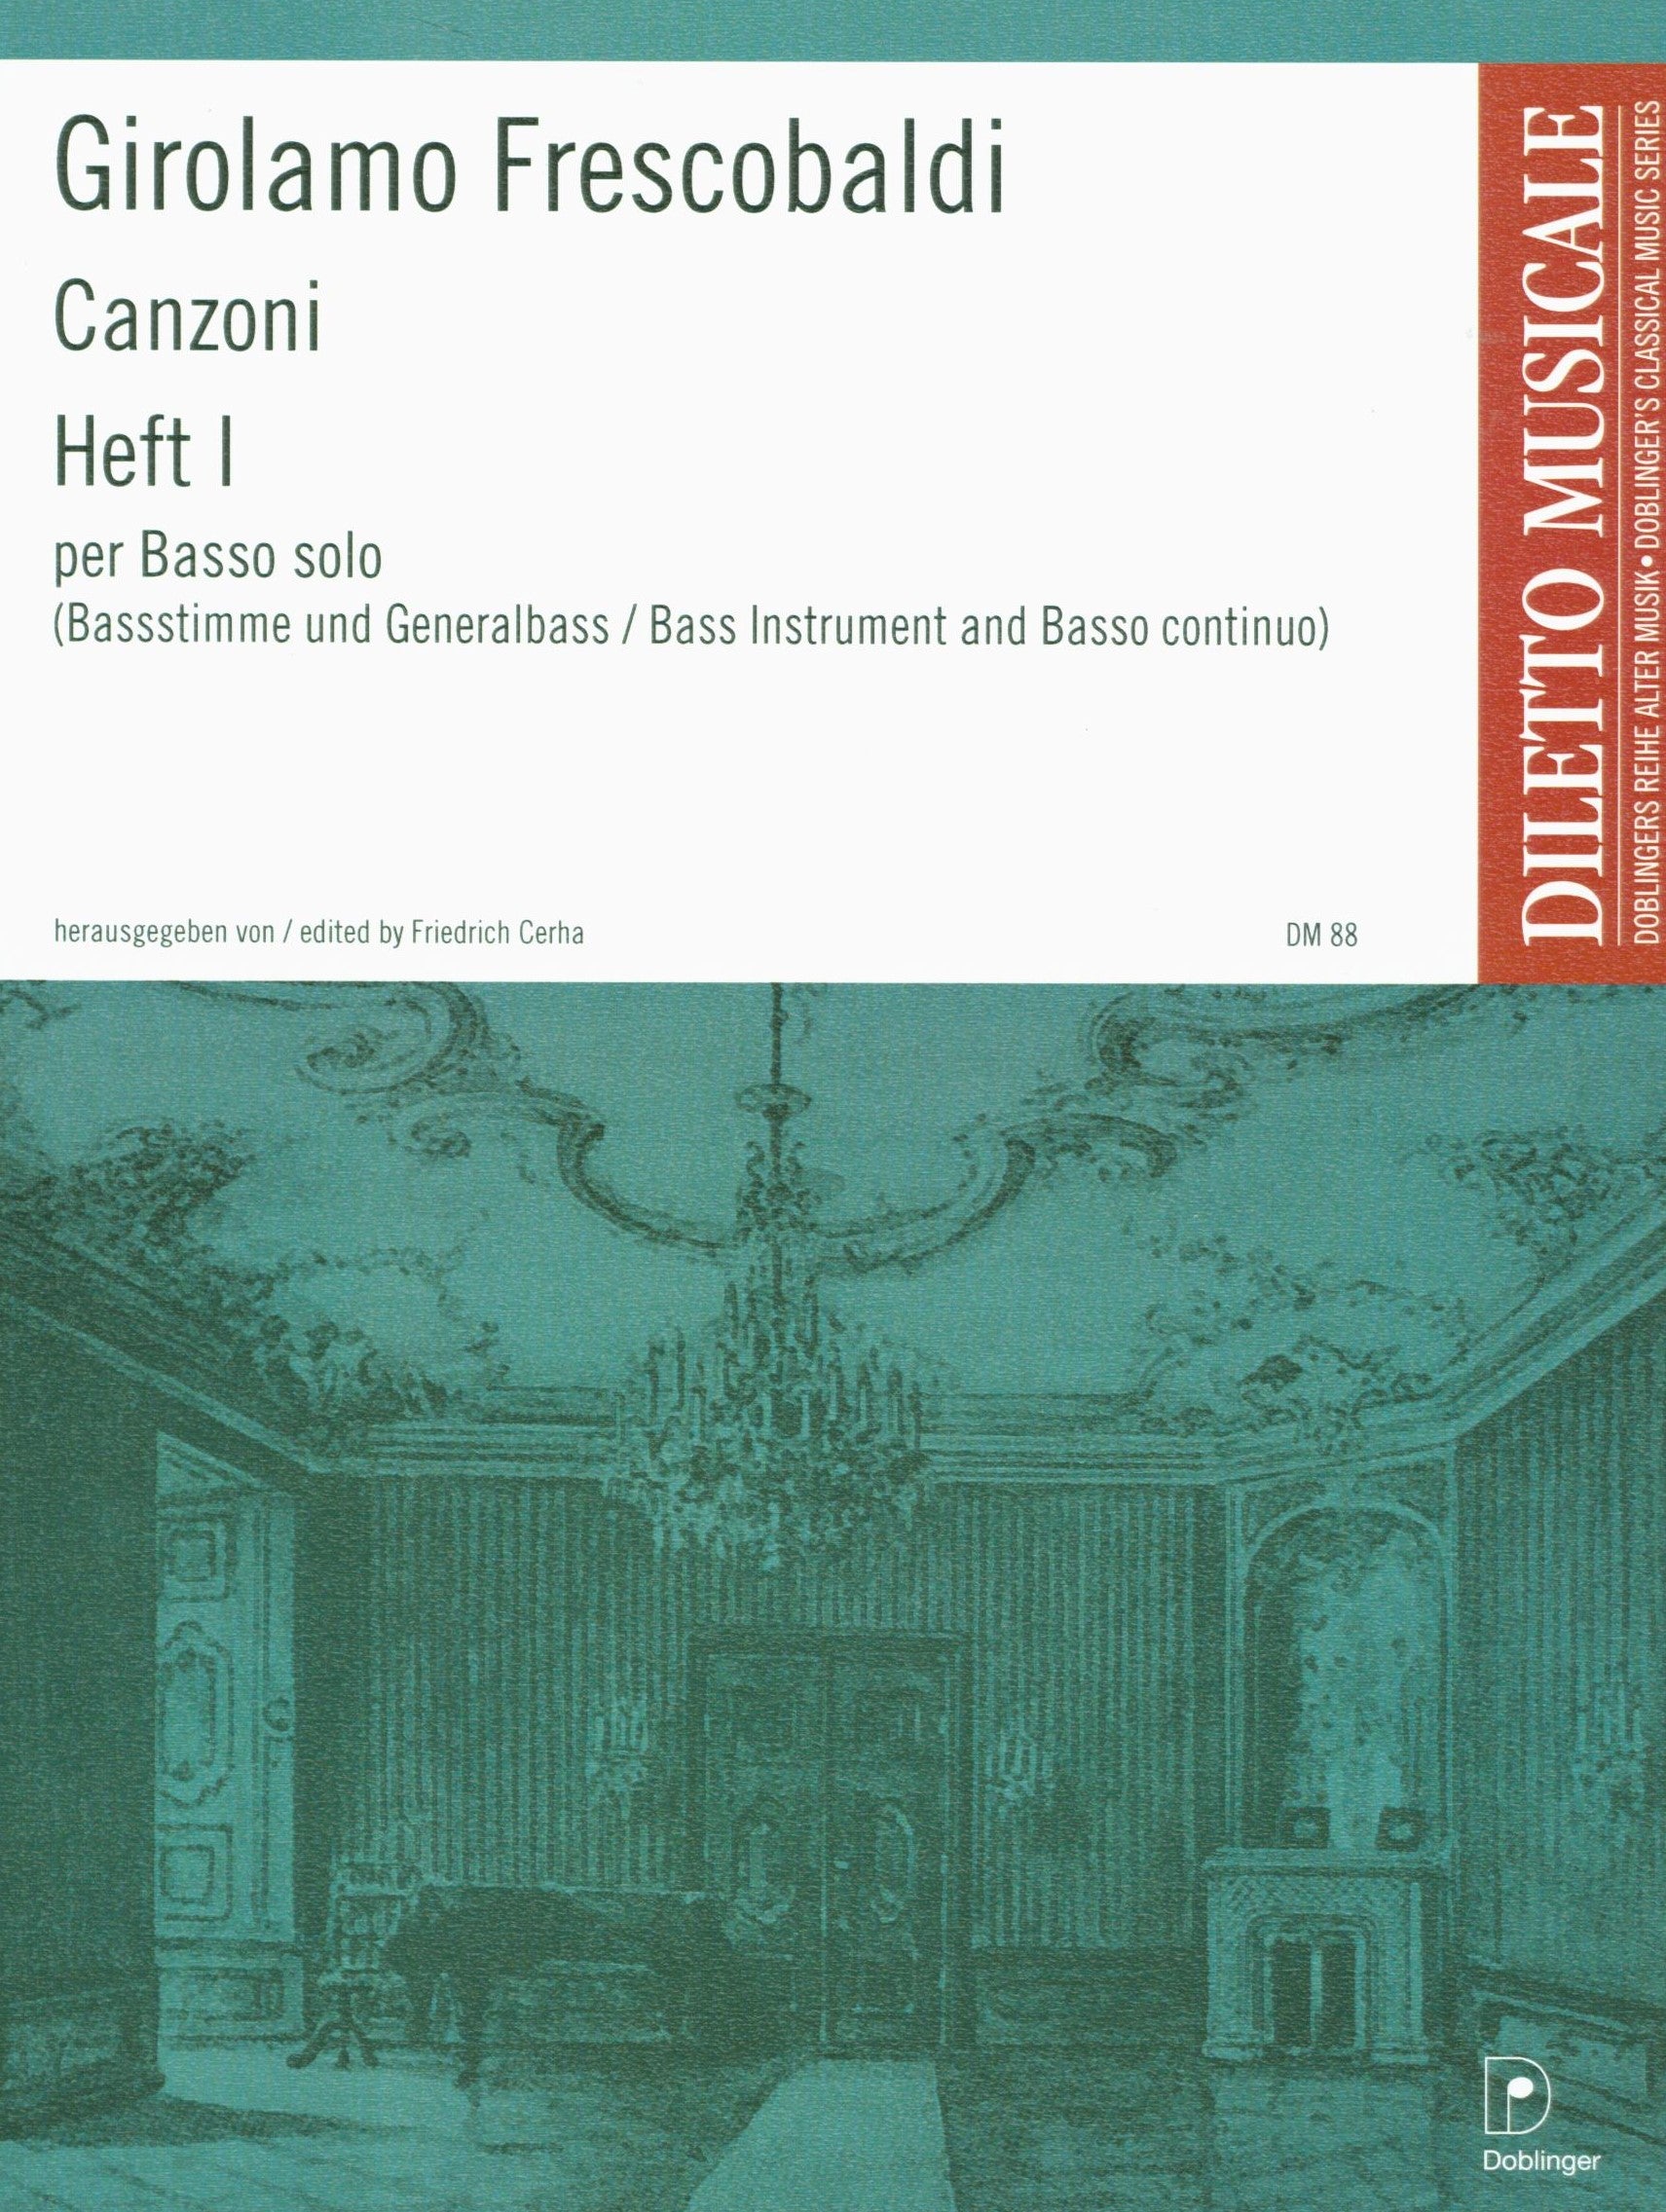 Frescobaldi: Canzoni for Solo Bass Instrument & Continuo - Volume 1